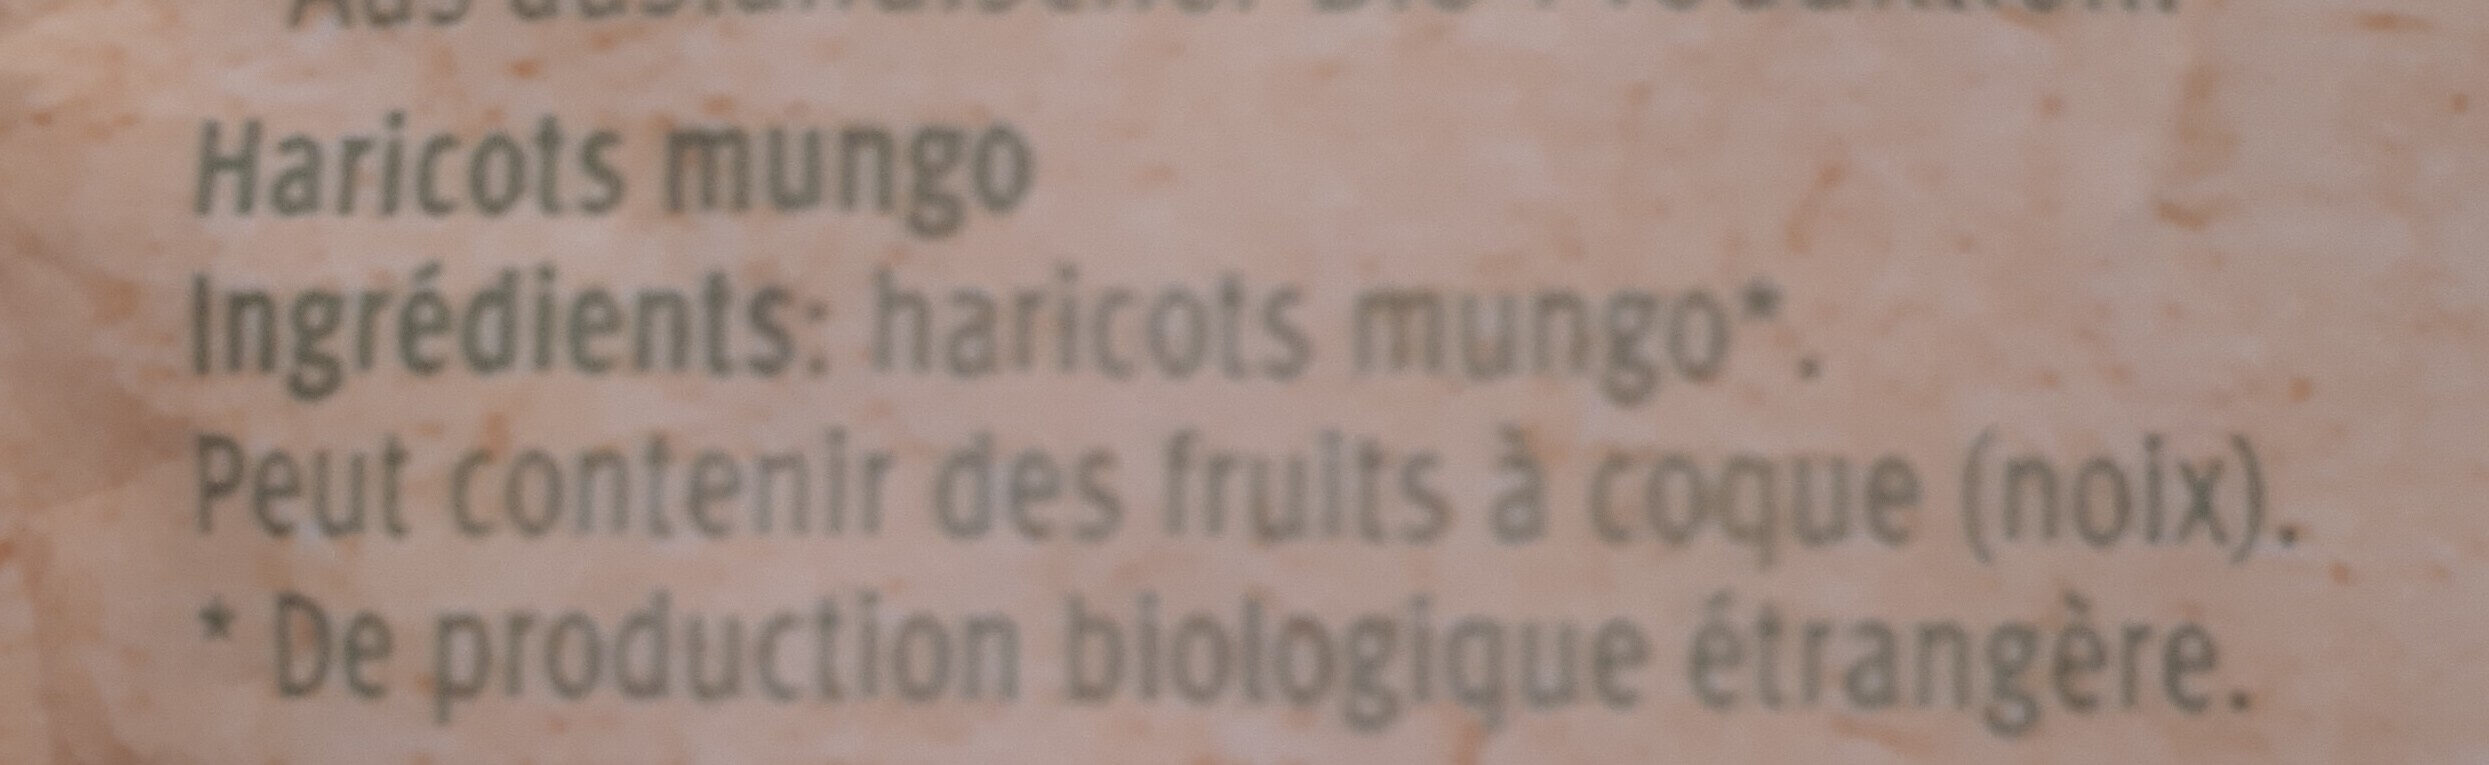 Haricots mungo - Zutaten - fr